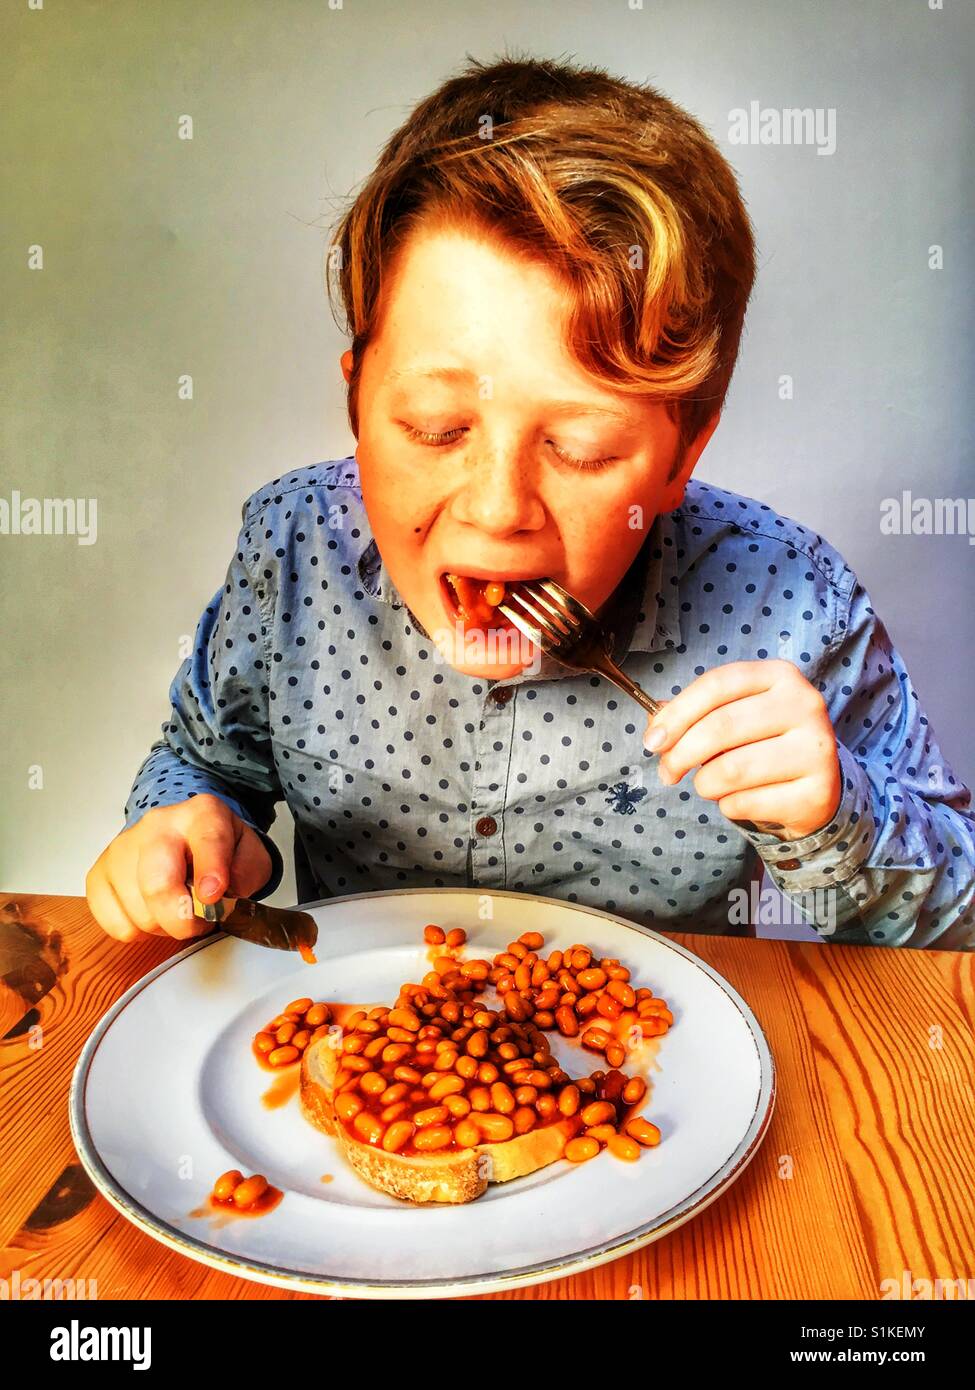 Jeune garçon de 11 ans de manger des haricots sur toast Banque D'Images